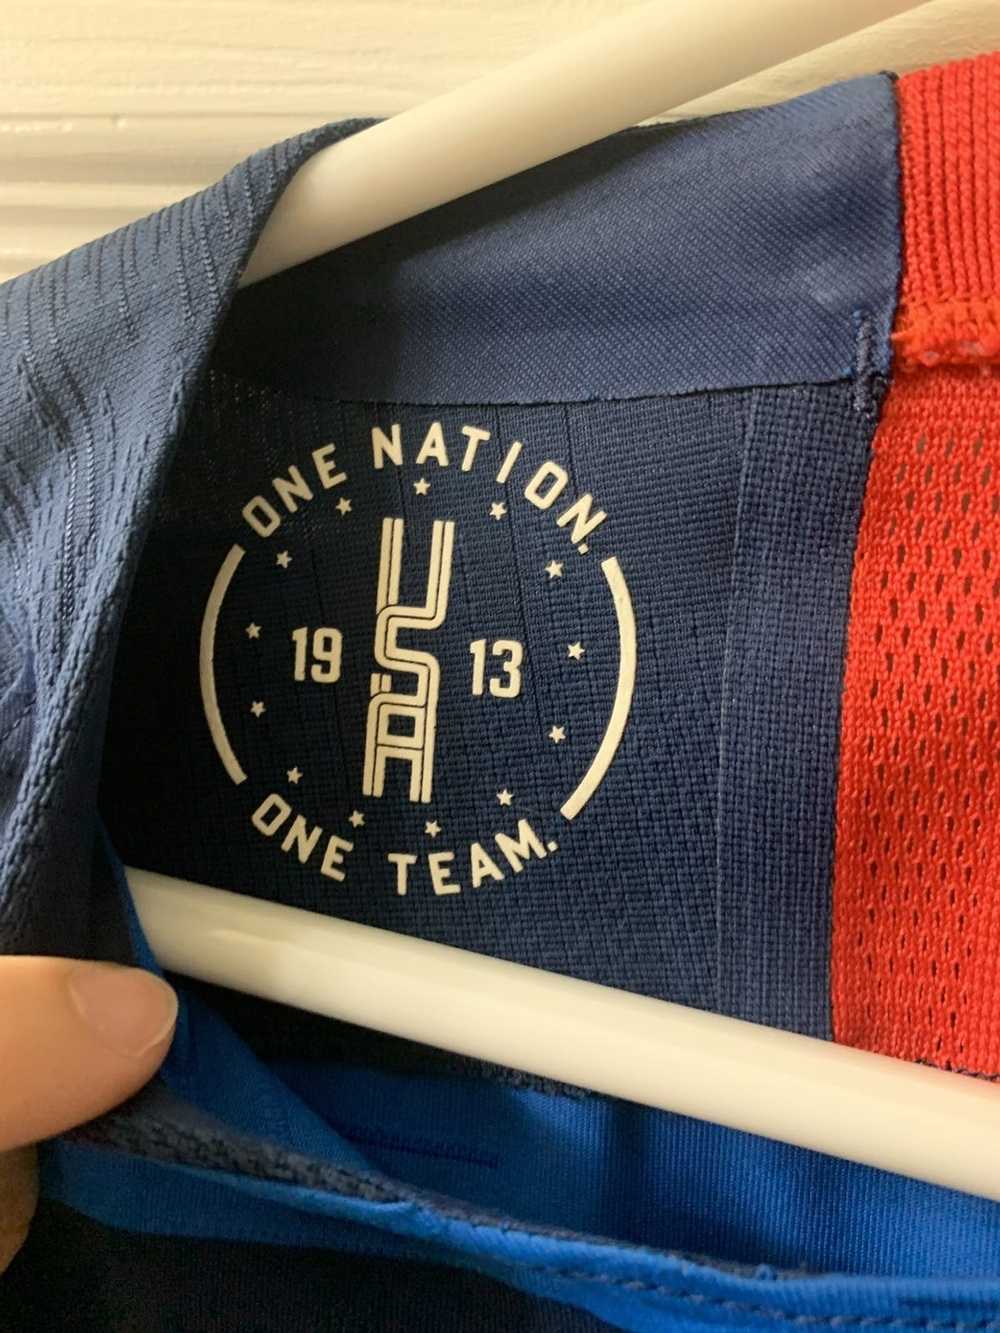 Nike × Soccer Jersey USA soccer jersey - image 3